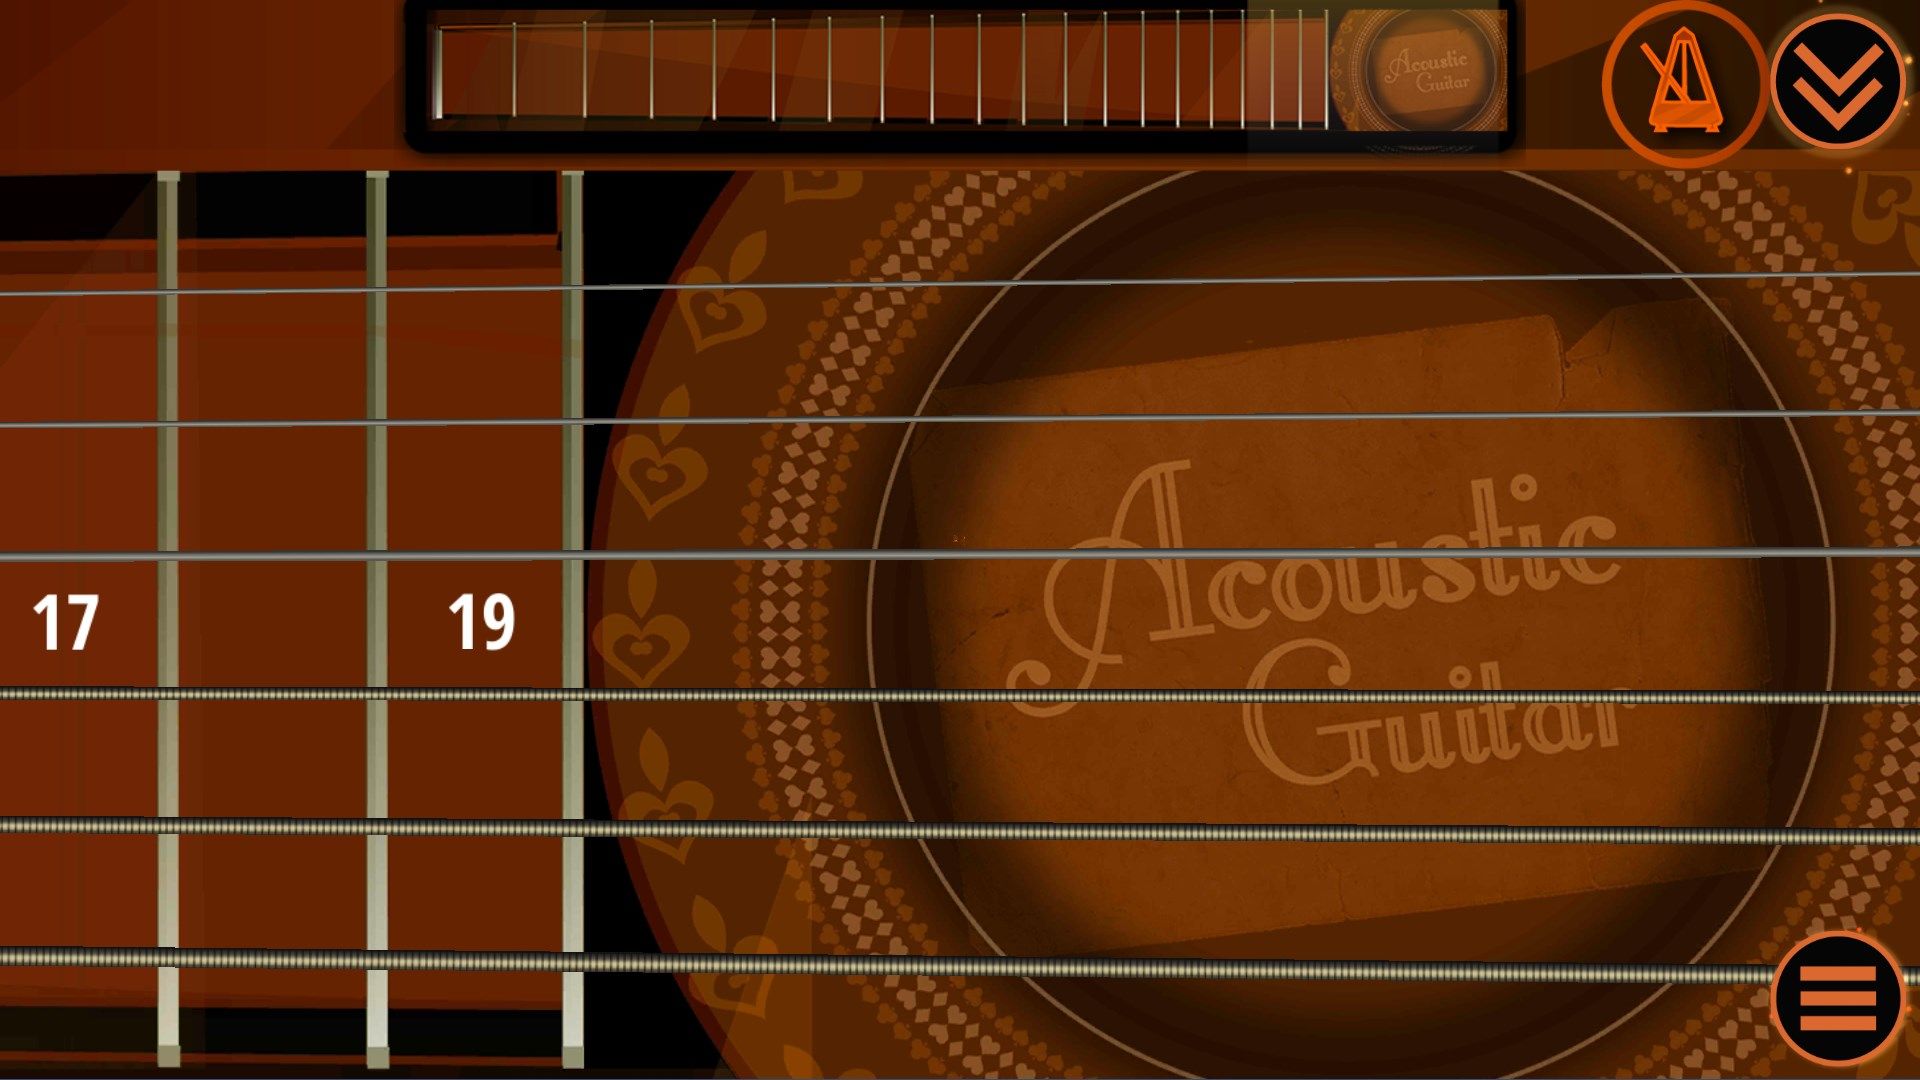 Best Acoustic Guitar